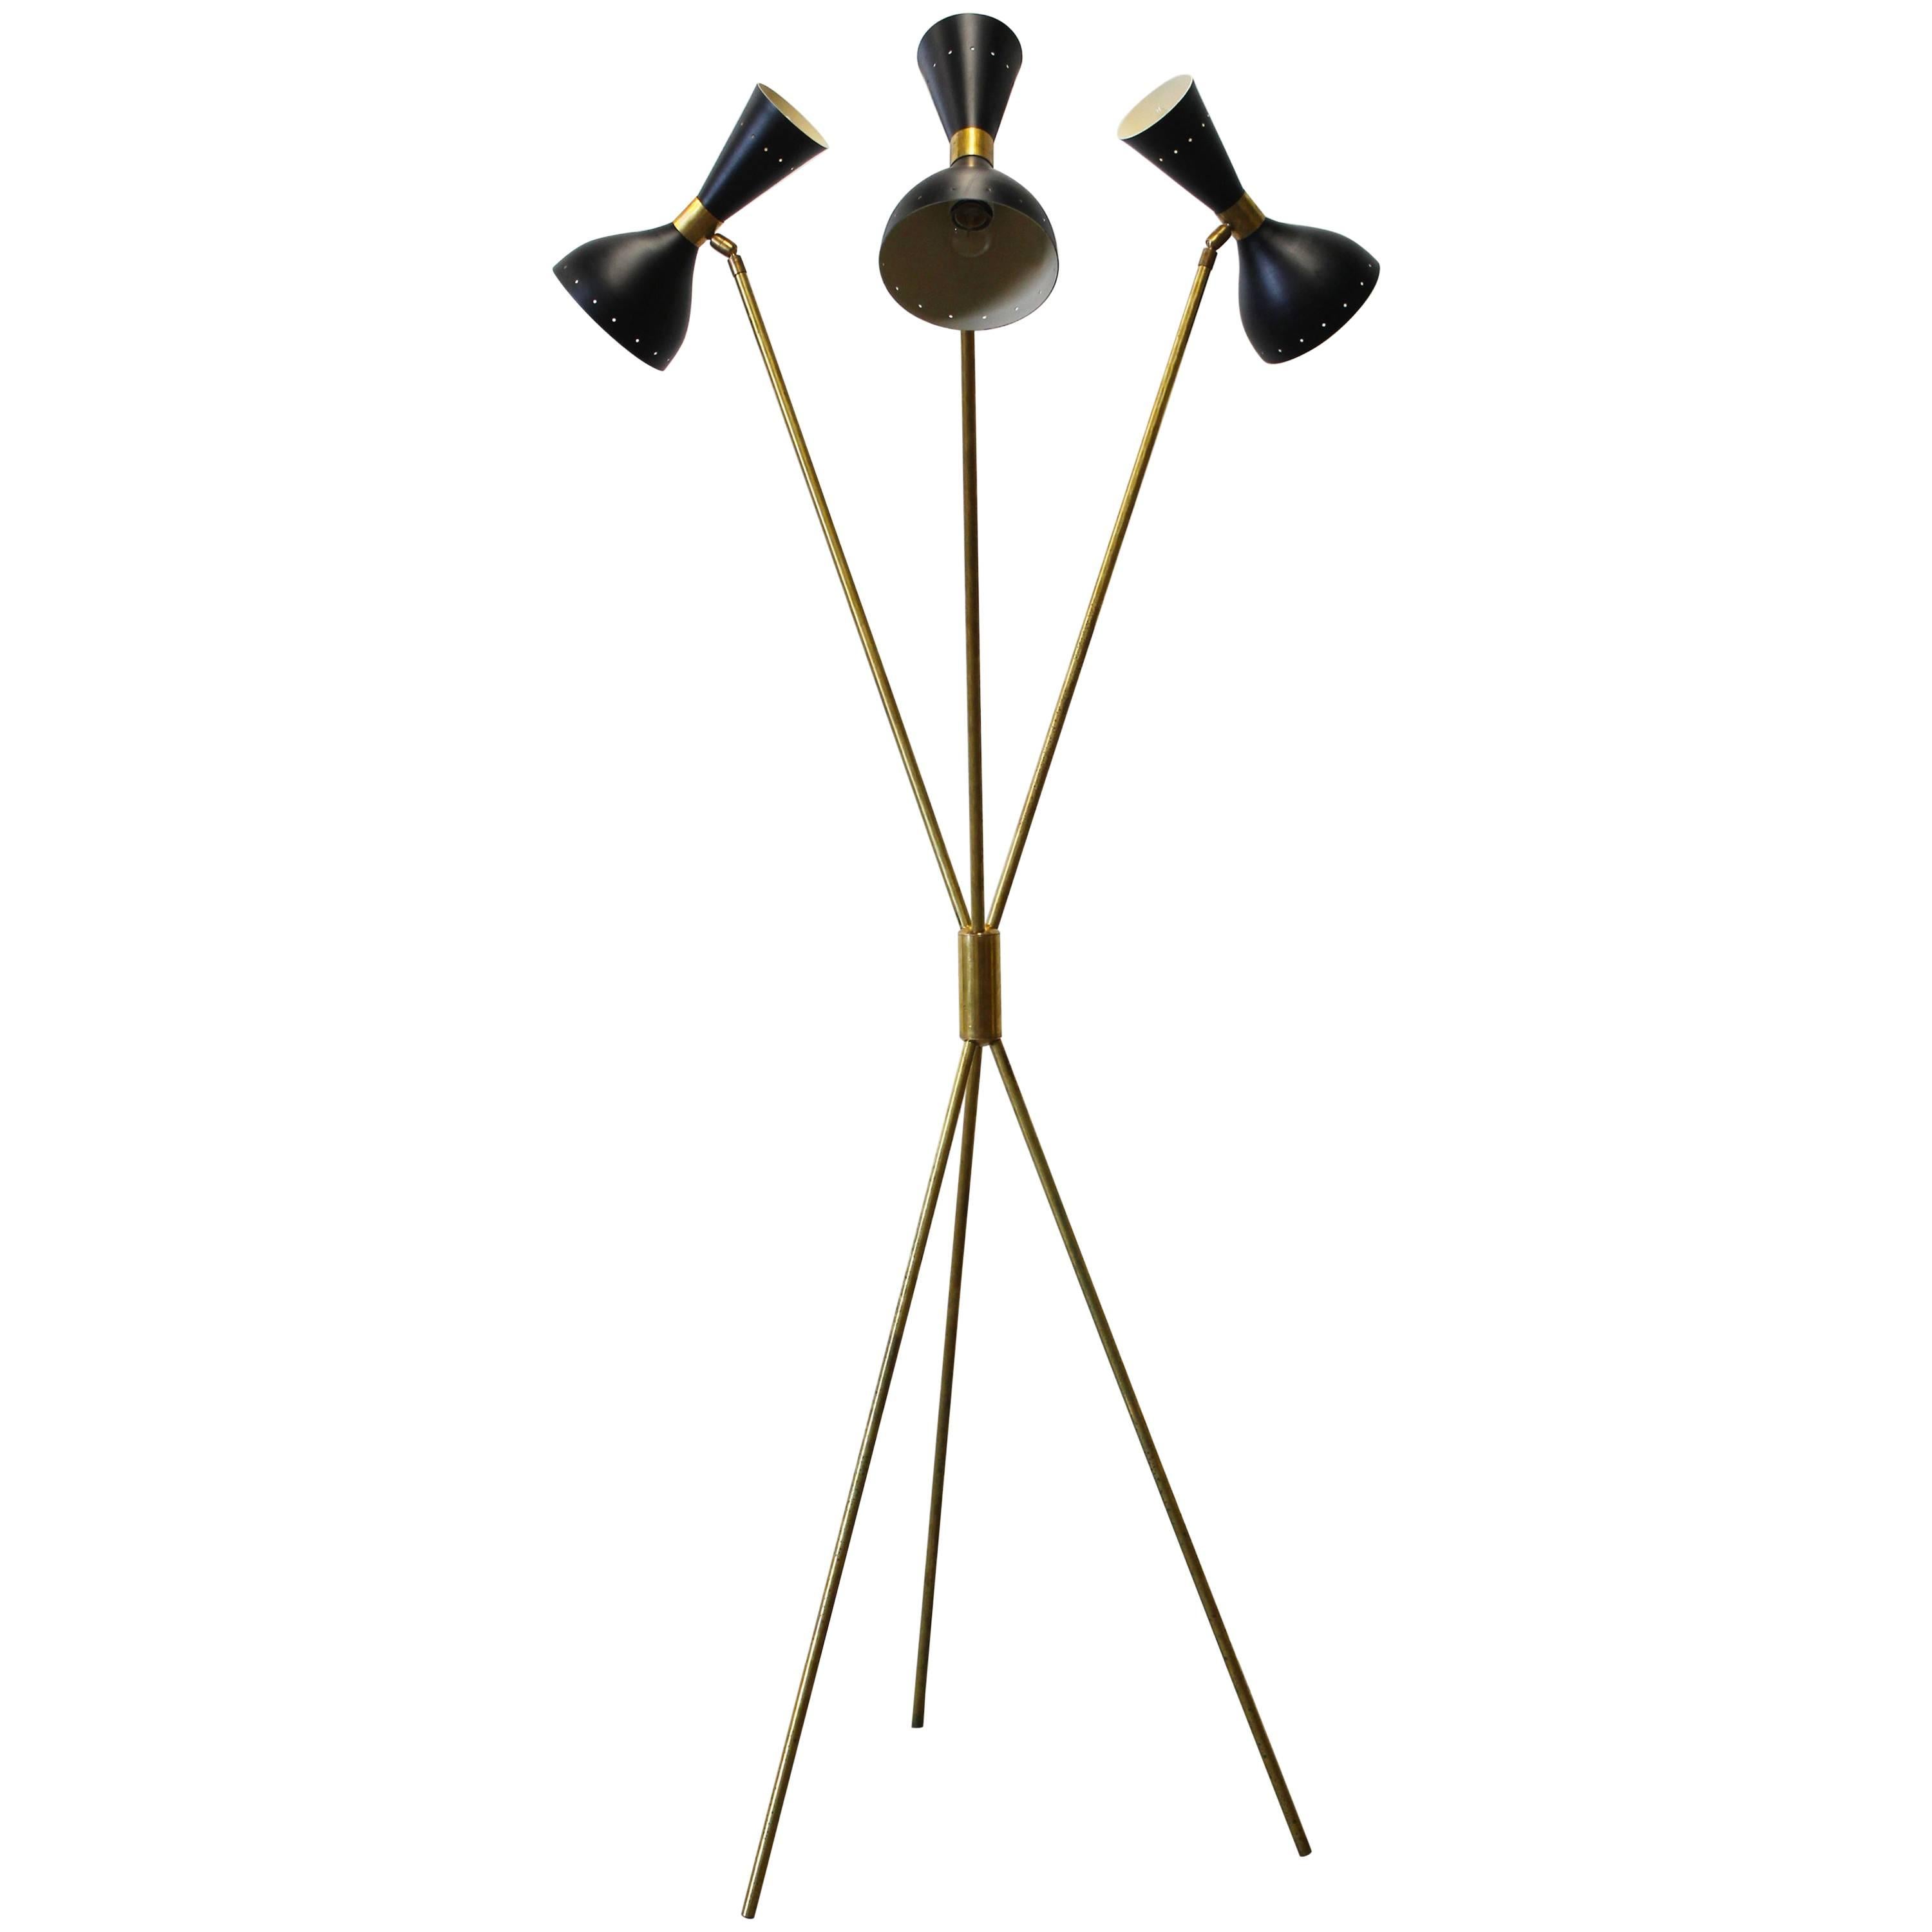 Midcentury Design Italian Minimalist Floor Lamp Style 1950s Stilnovo Brass Black